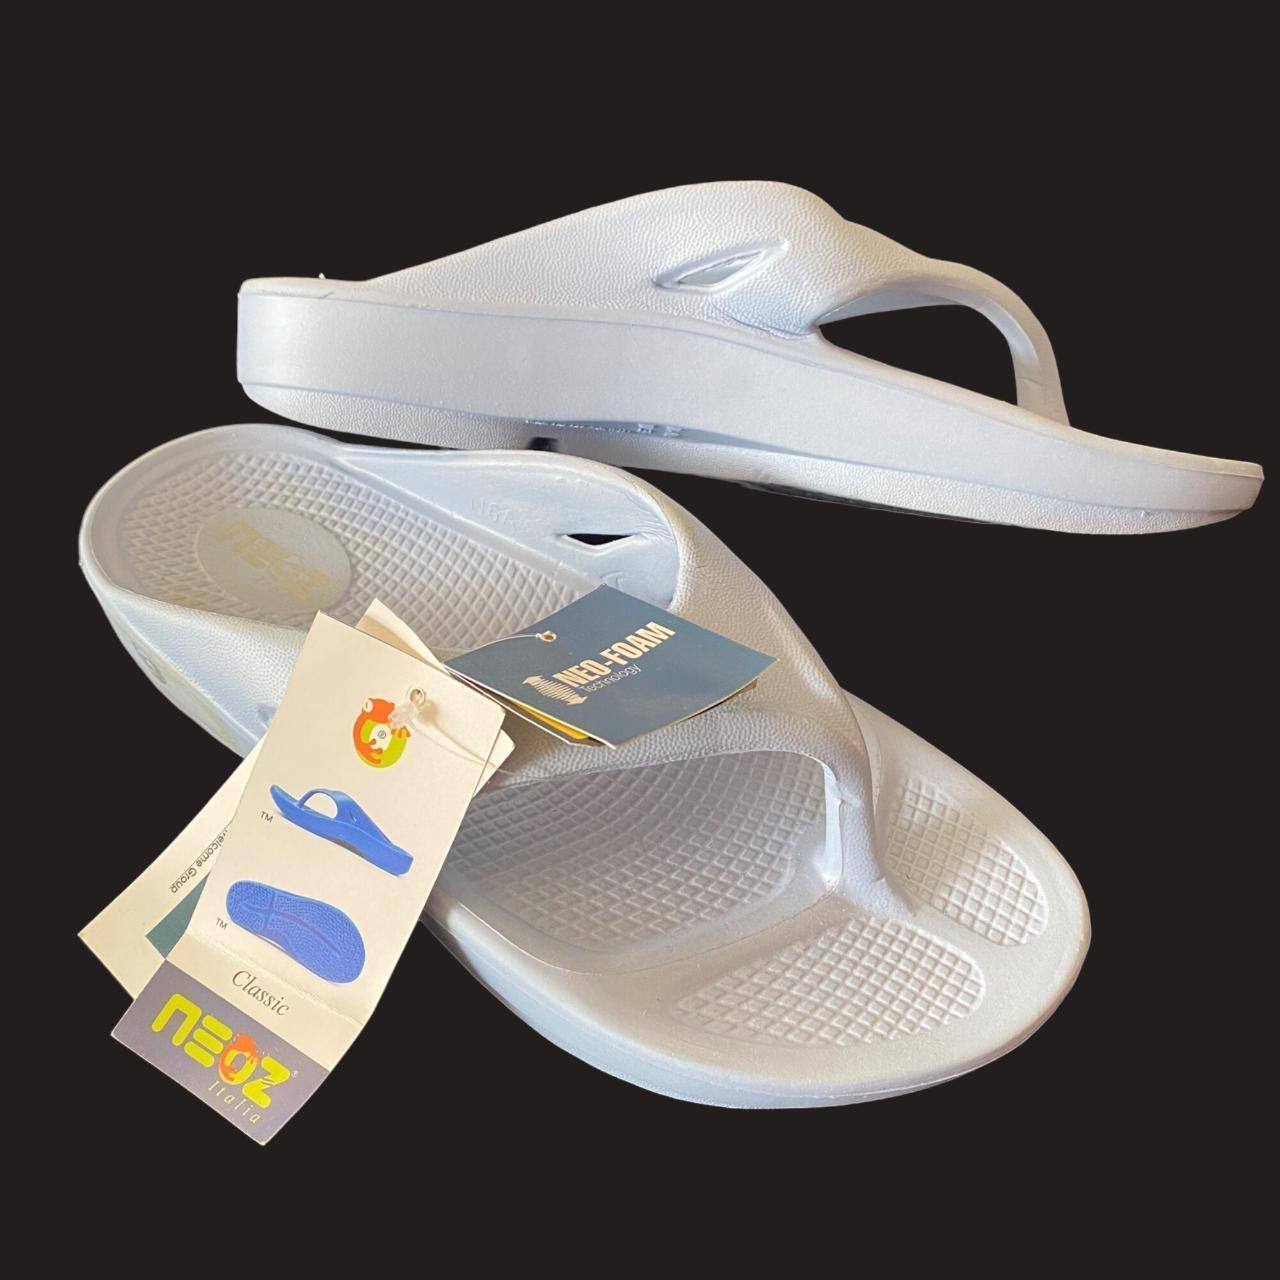 Neoz light blue flip flop sandals orthopedic comfort... - Depop